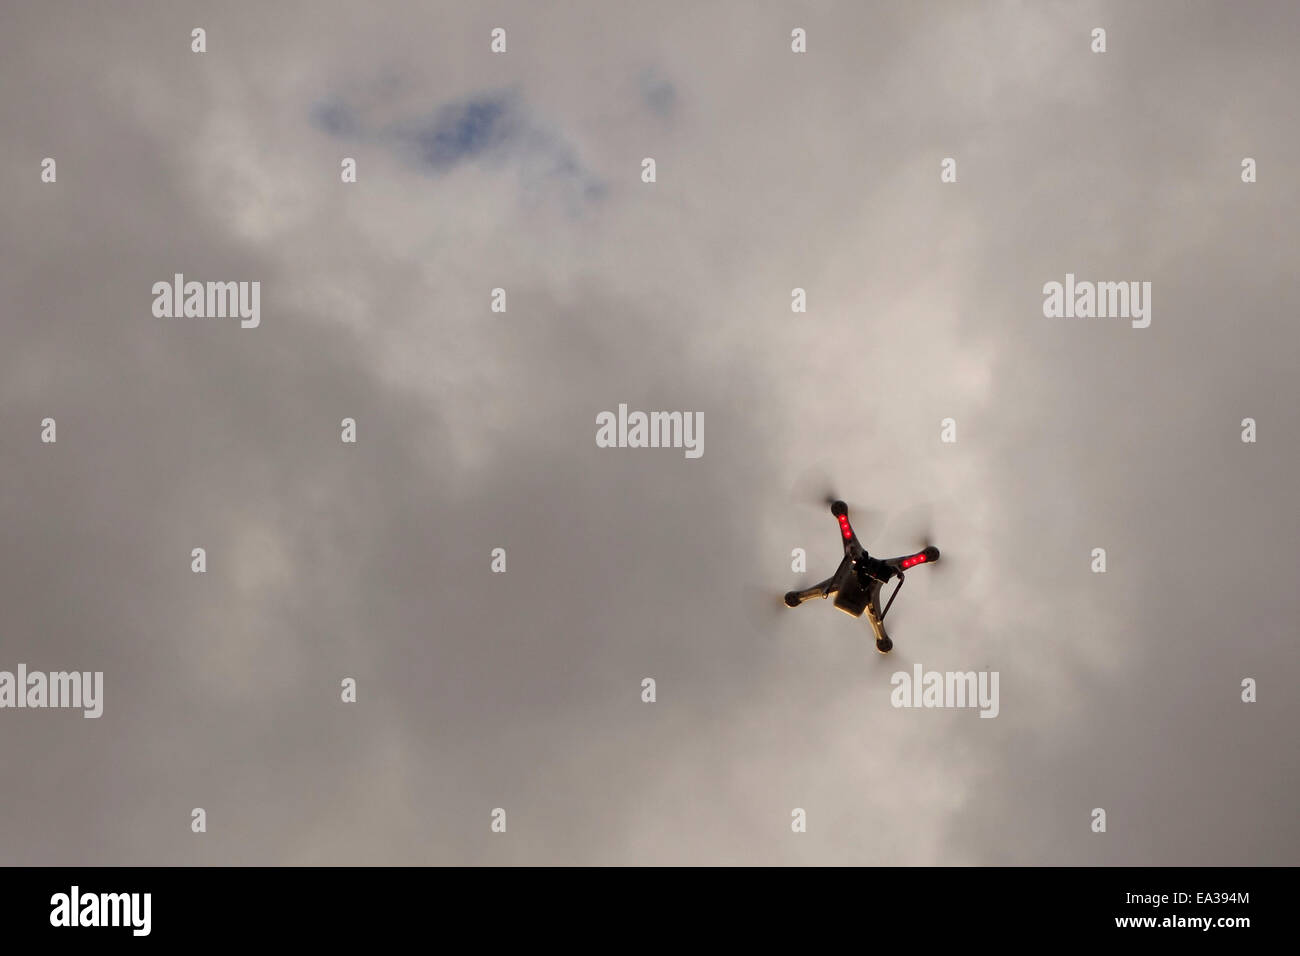 Un service de transport électronique multicopter une caméra Gopro voler dans l'air Banque D'Images